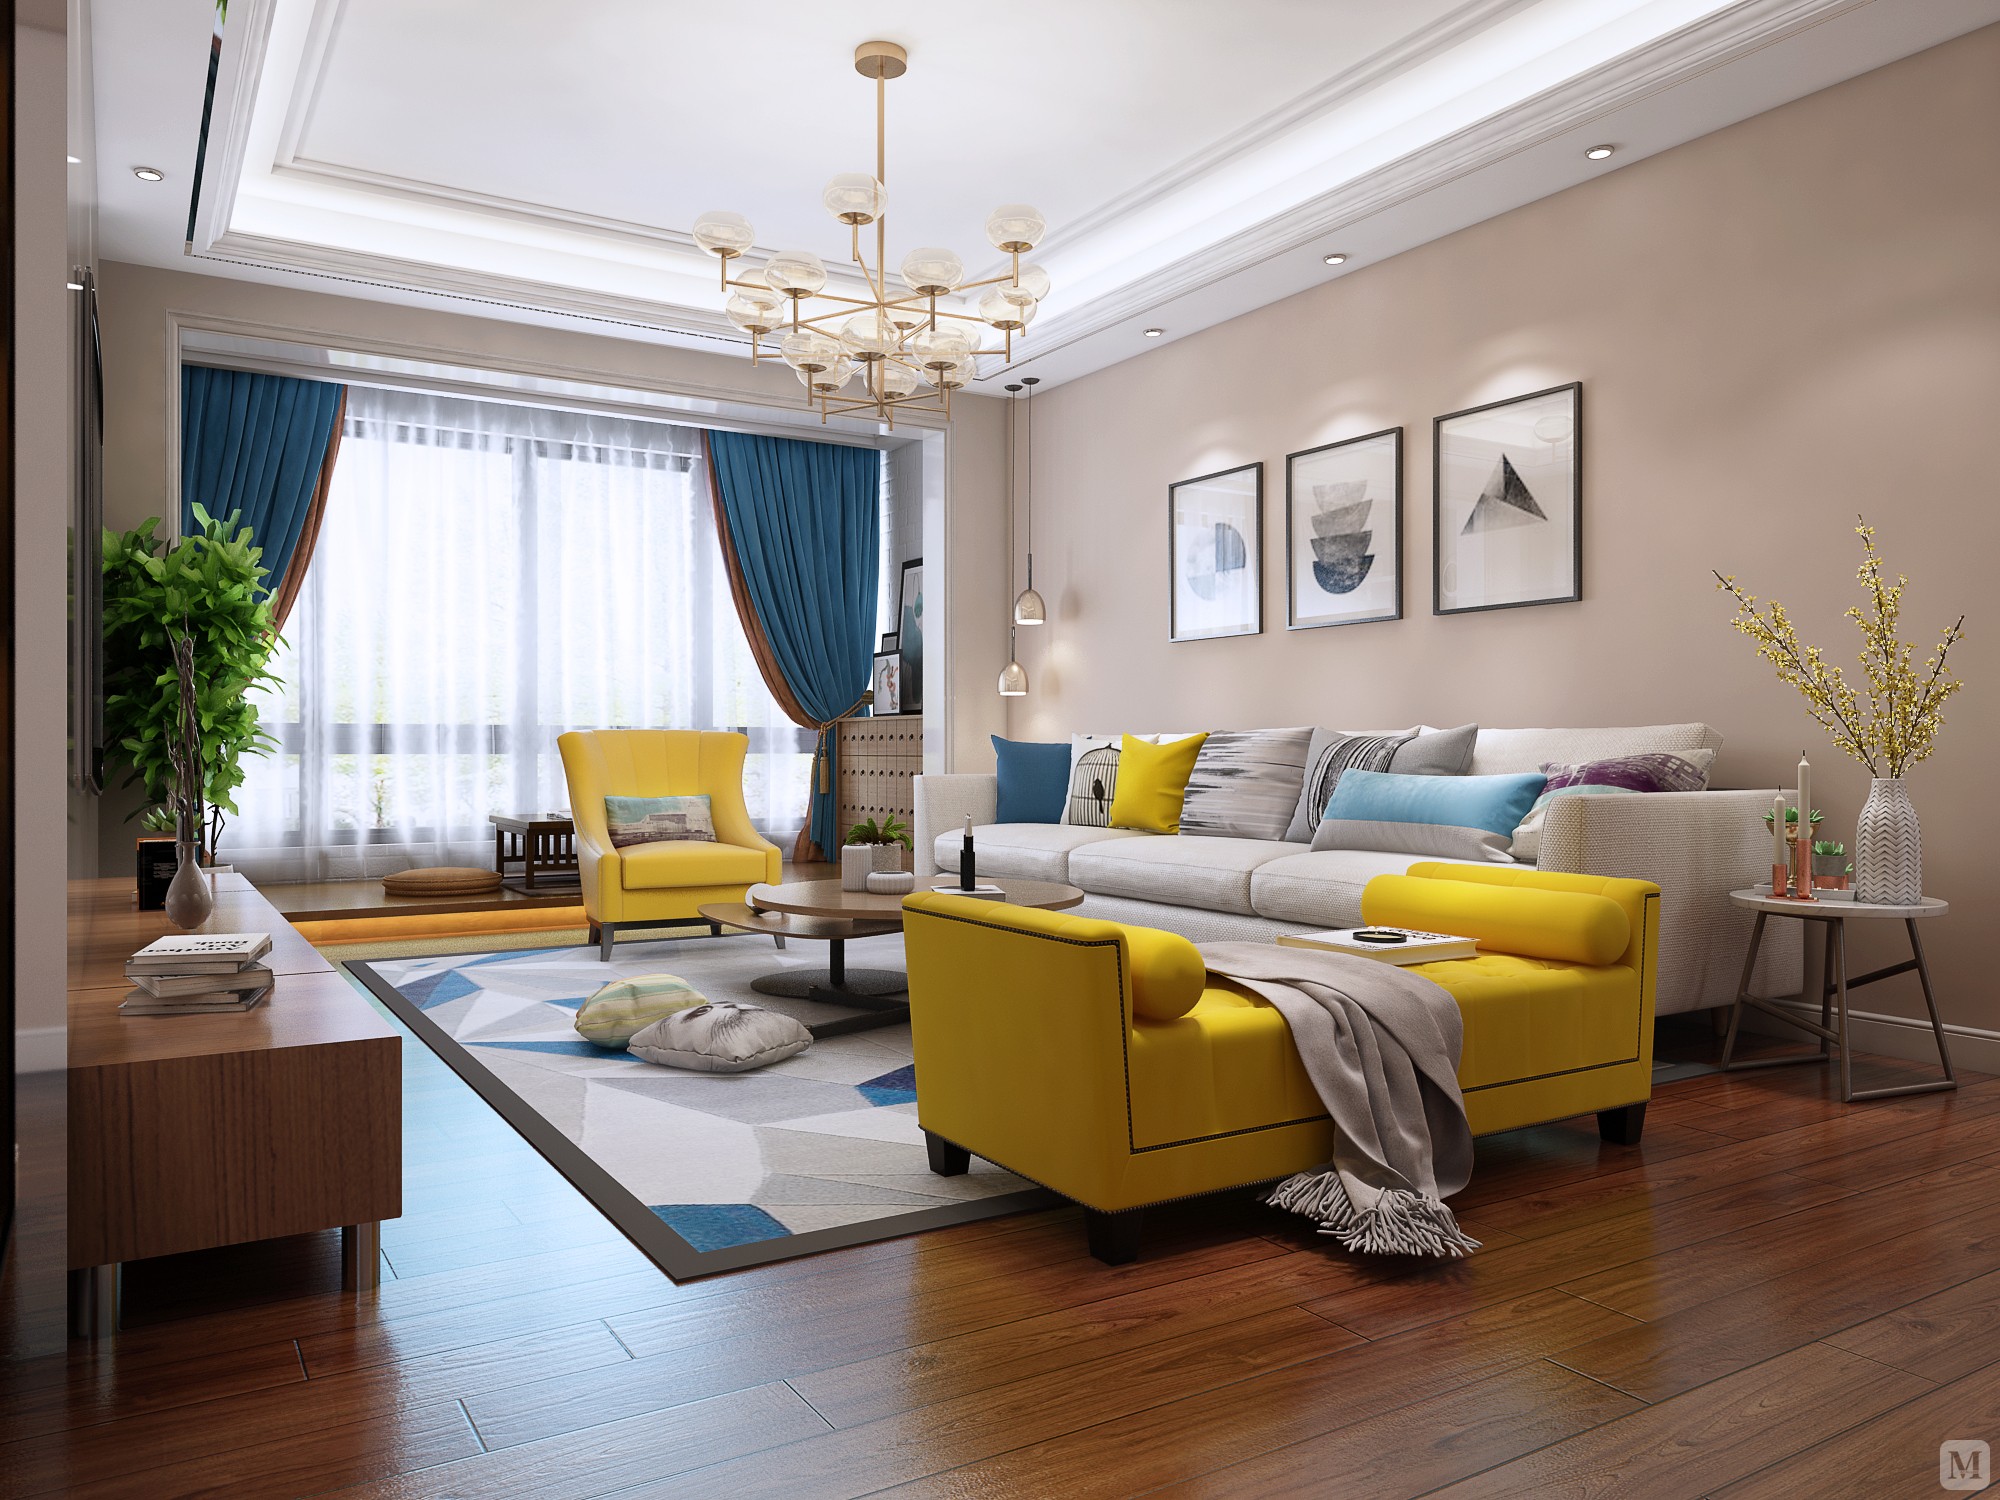 白色的沙发,橱柜等家具更加时尚,具有美观与舒适并存的享受